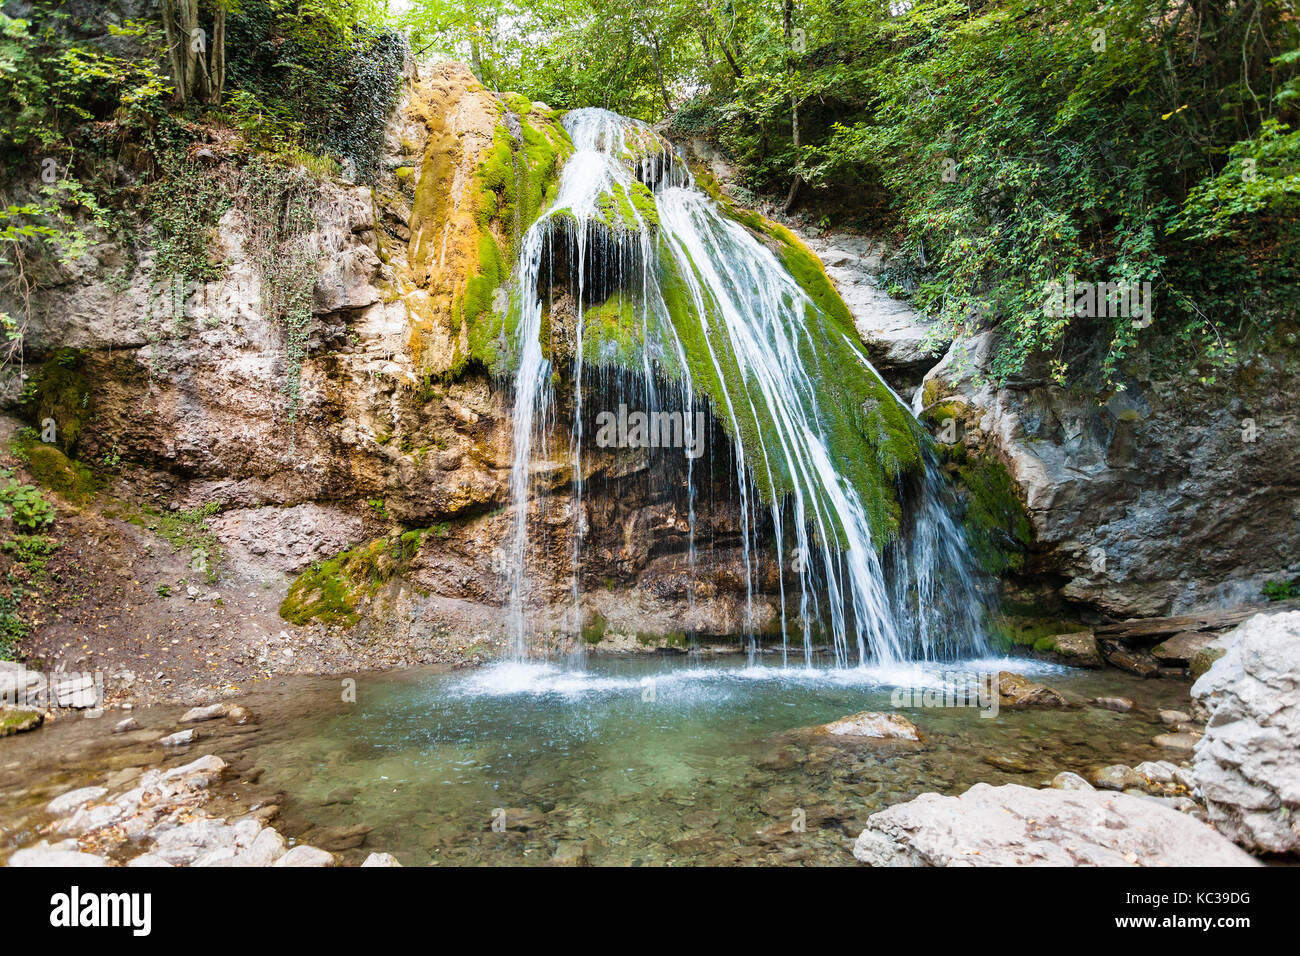 Reise auf die Krim - Blick auf den Fluss mit Ulu-Uzen Djur - djur Wasserfall Haphal Schlucht von Habhal Hydrologischen finden Naturpark in Krimberge in Stockfoto